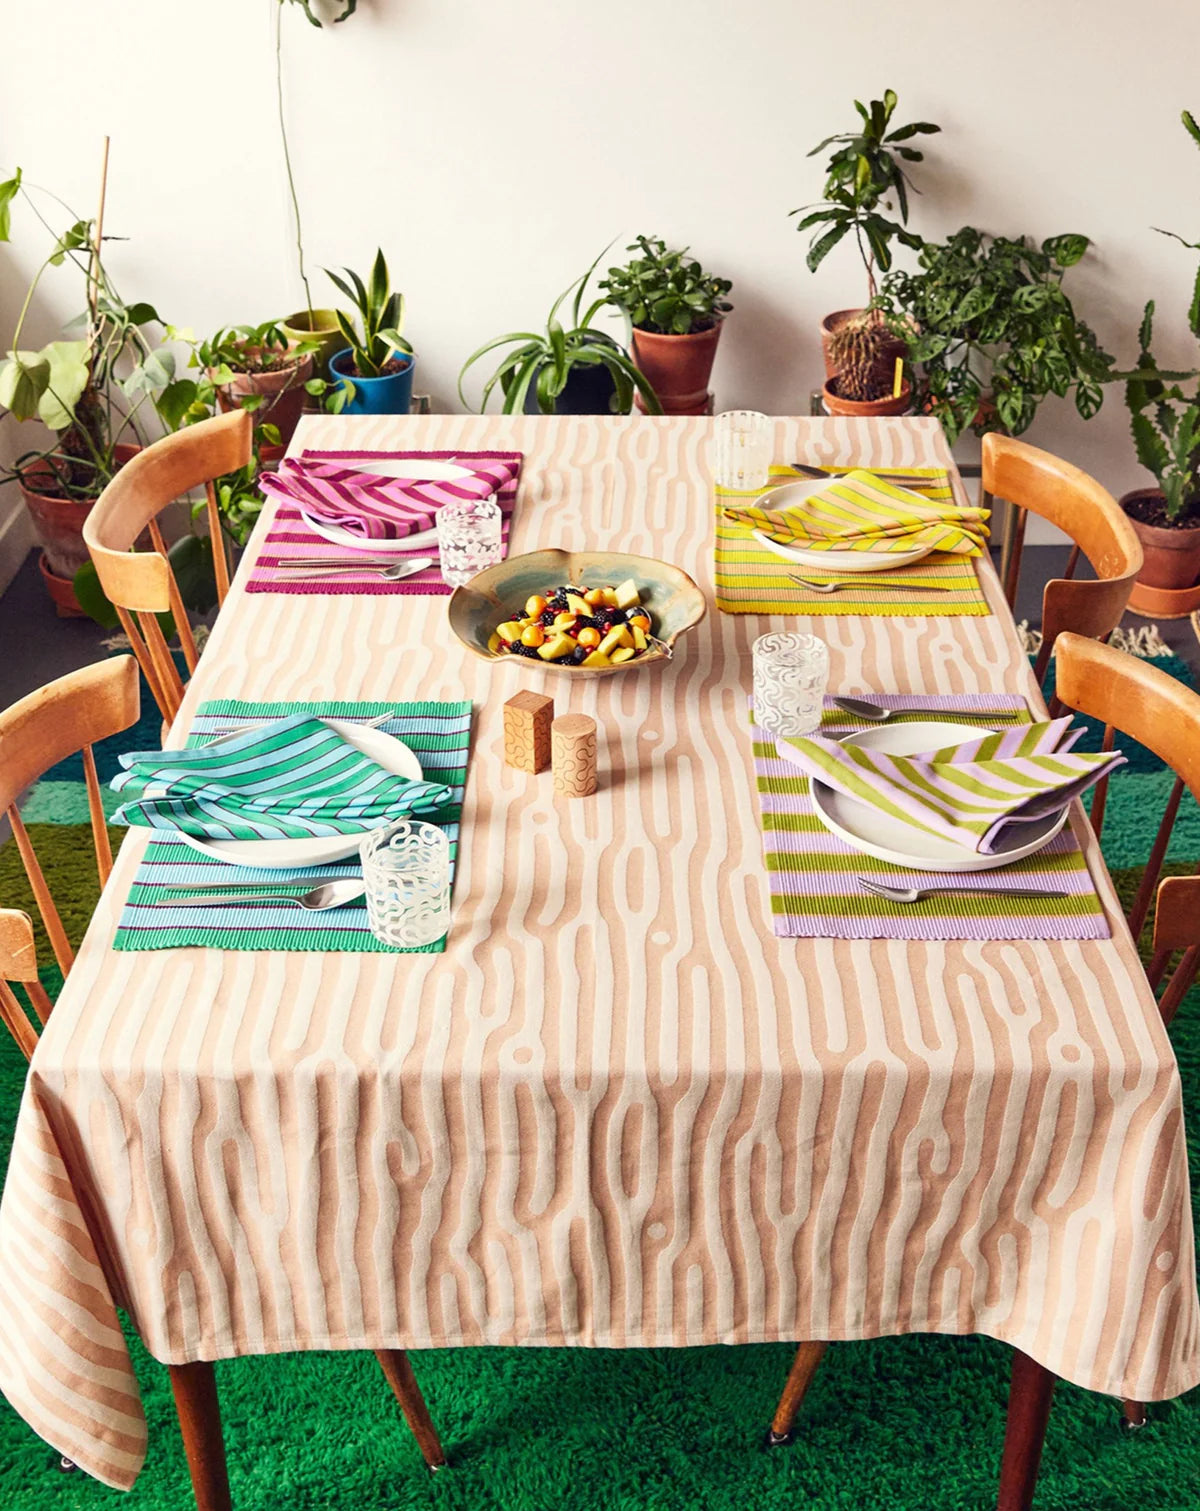 table à manger avec nappe rayée orange et blanche quatre napperons set de table coloré et rayé déparayé dusendusen, quatre assiette et des couverts